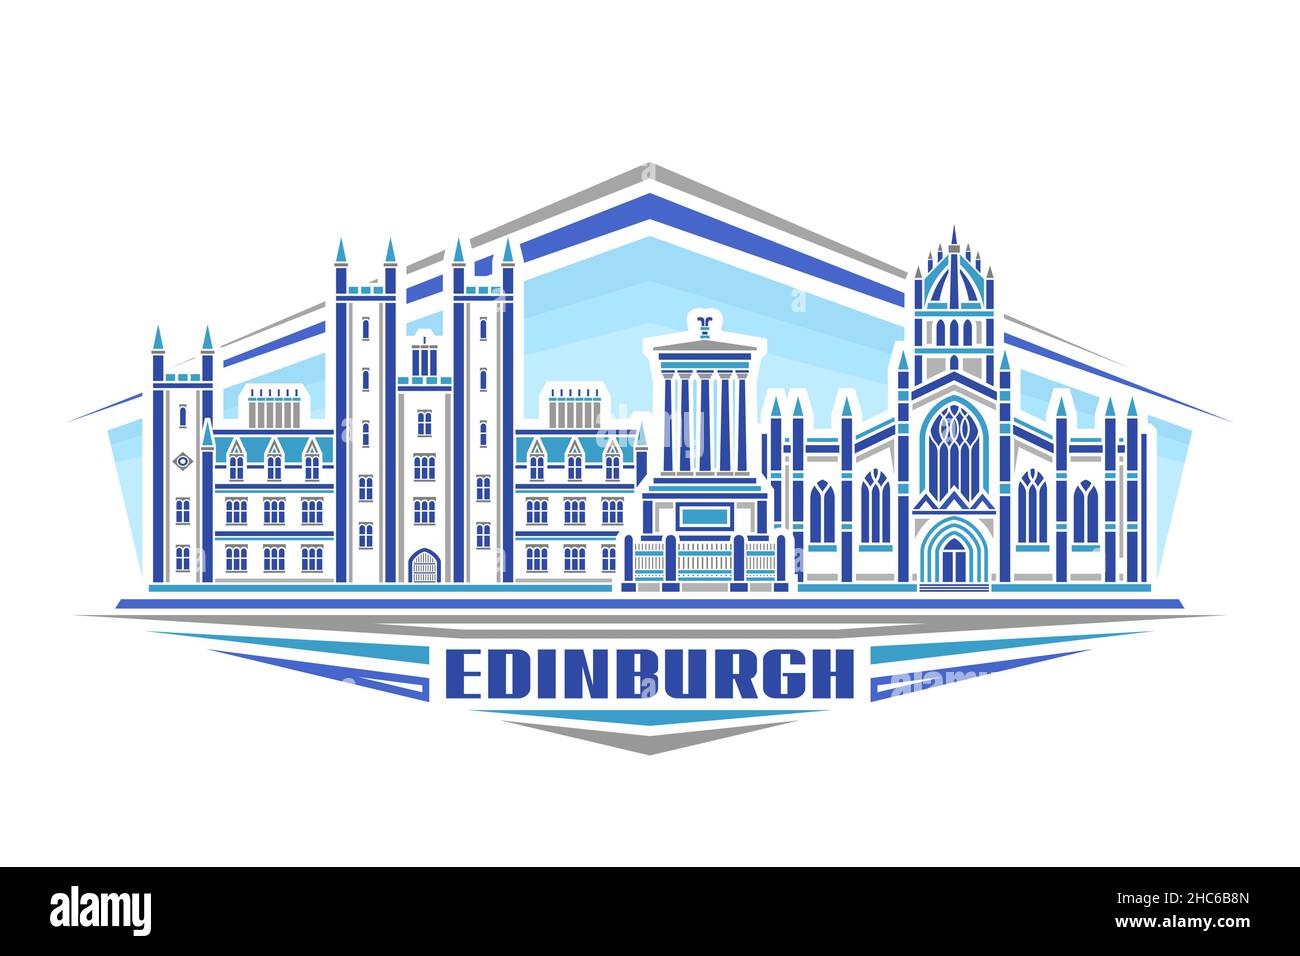 Illustration vectorielle d'Édimbourg, logo horizontal avec design linéaire célèbre paysage urbain d'édimbourg sur fond de ciel de jour, concession européenne d'art urbain Illustration de Vecteur